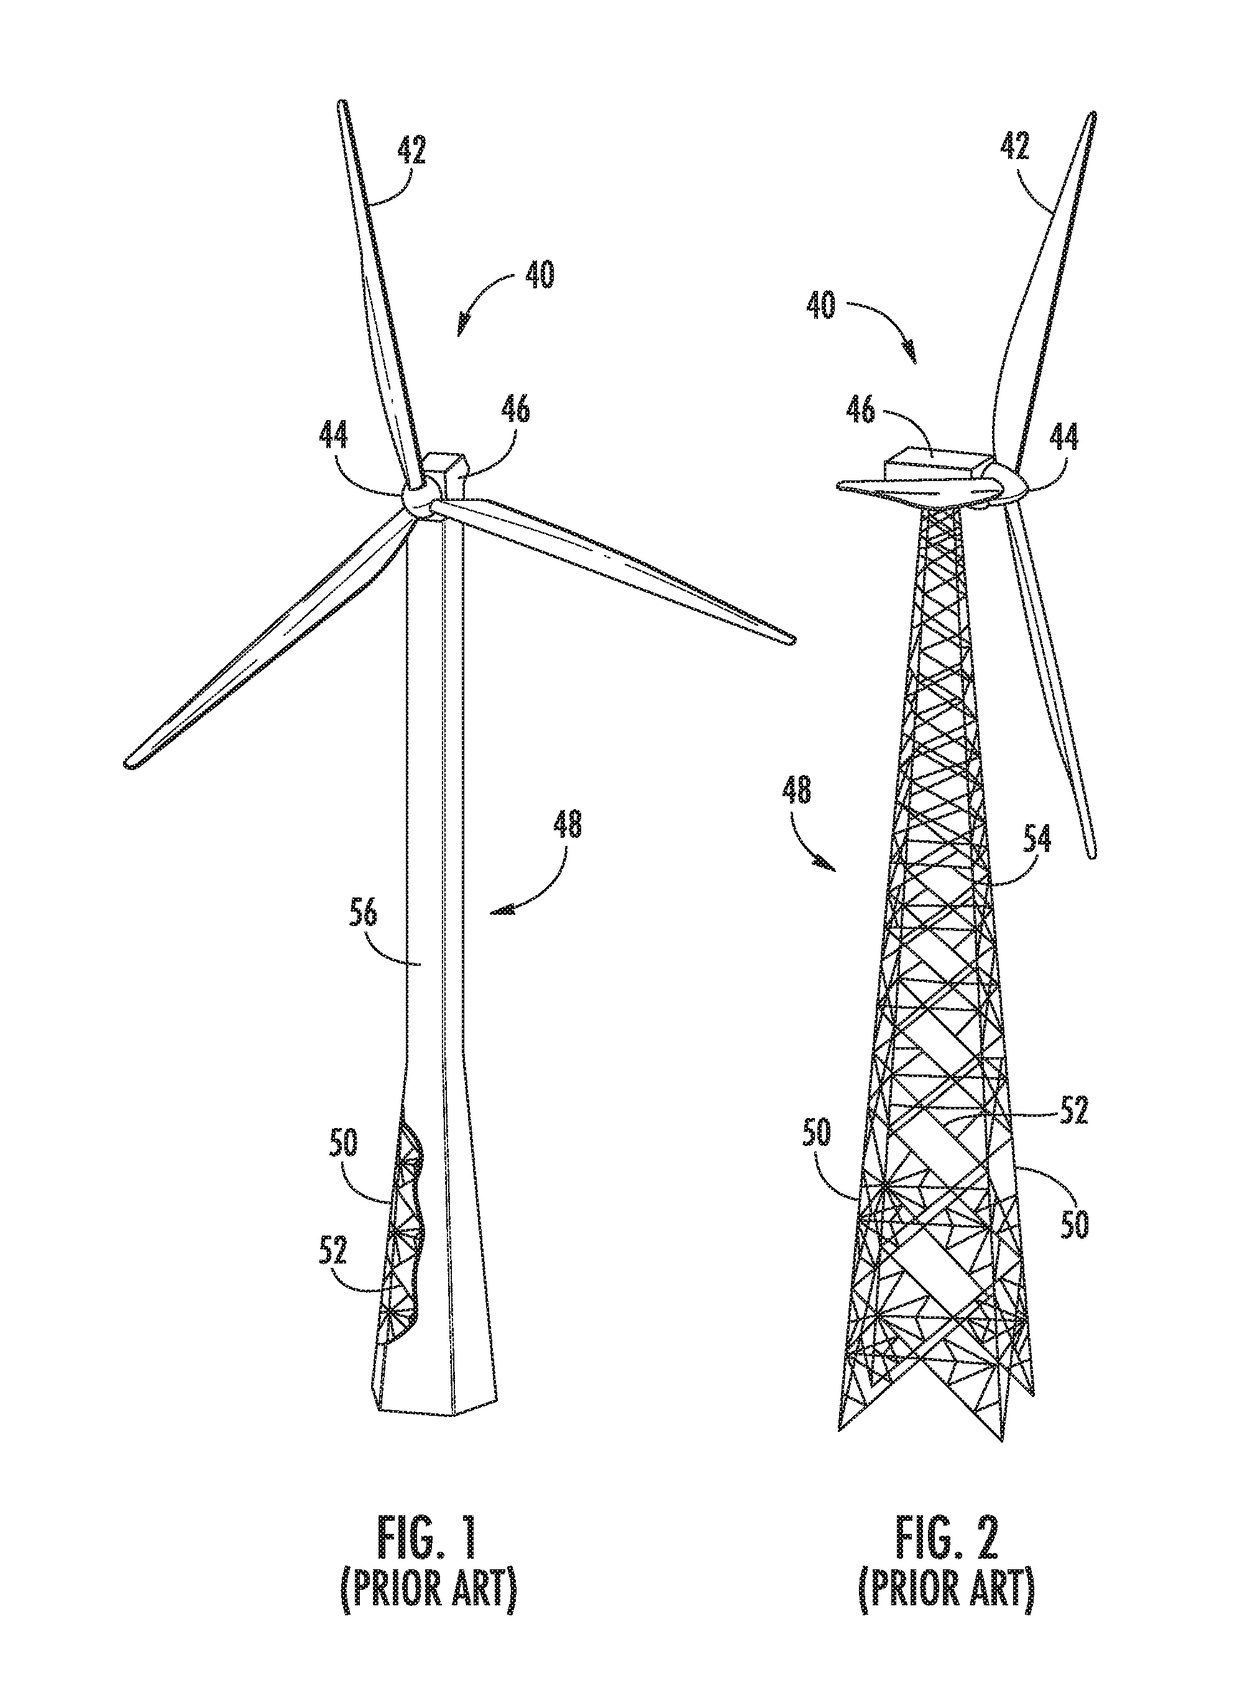 Hybrid tubular lattice tower assembly for a wind turbine